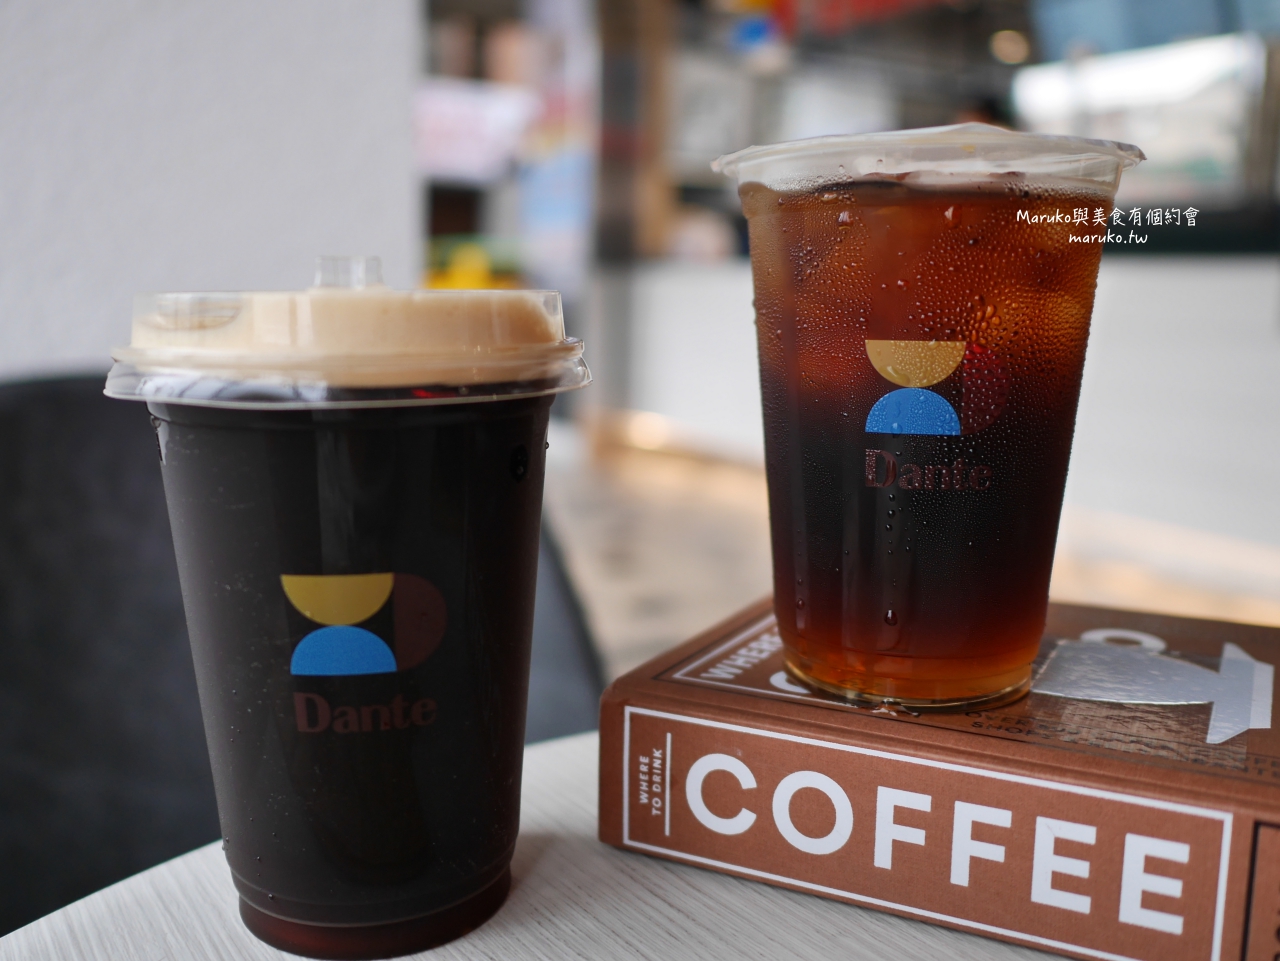 【土城】Dante 丹堤全新概念店 飲品帶著走 手沖單品咖啡 氮氣咖啡 產地可可 台灣茶 台北新開咖啡店一次推薦 @Maruko與美食有個約會